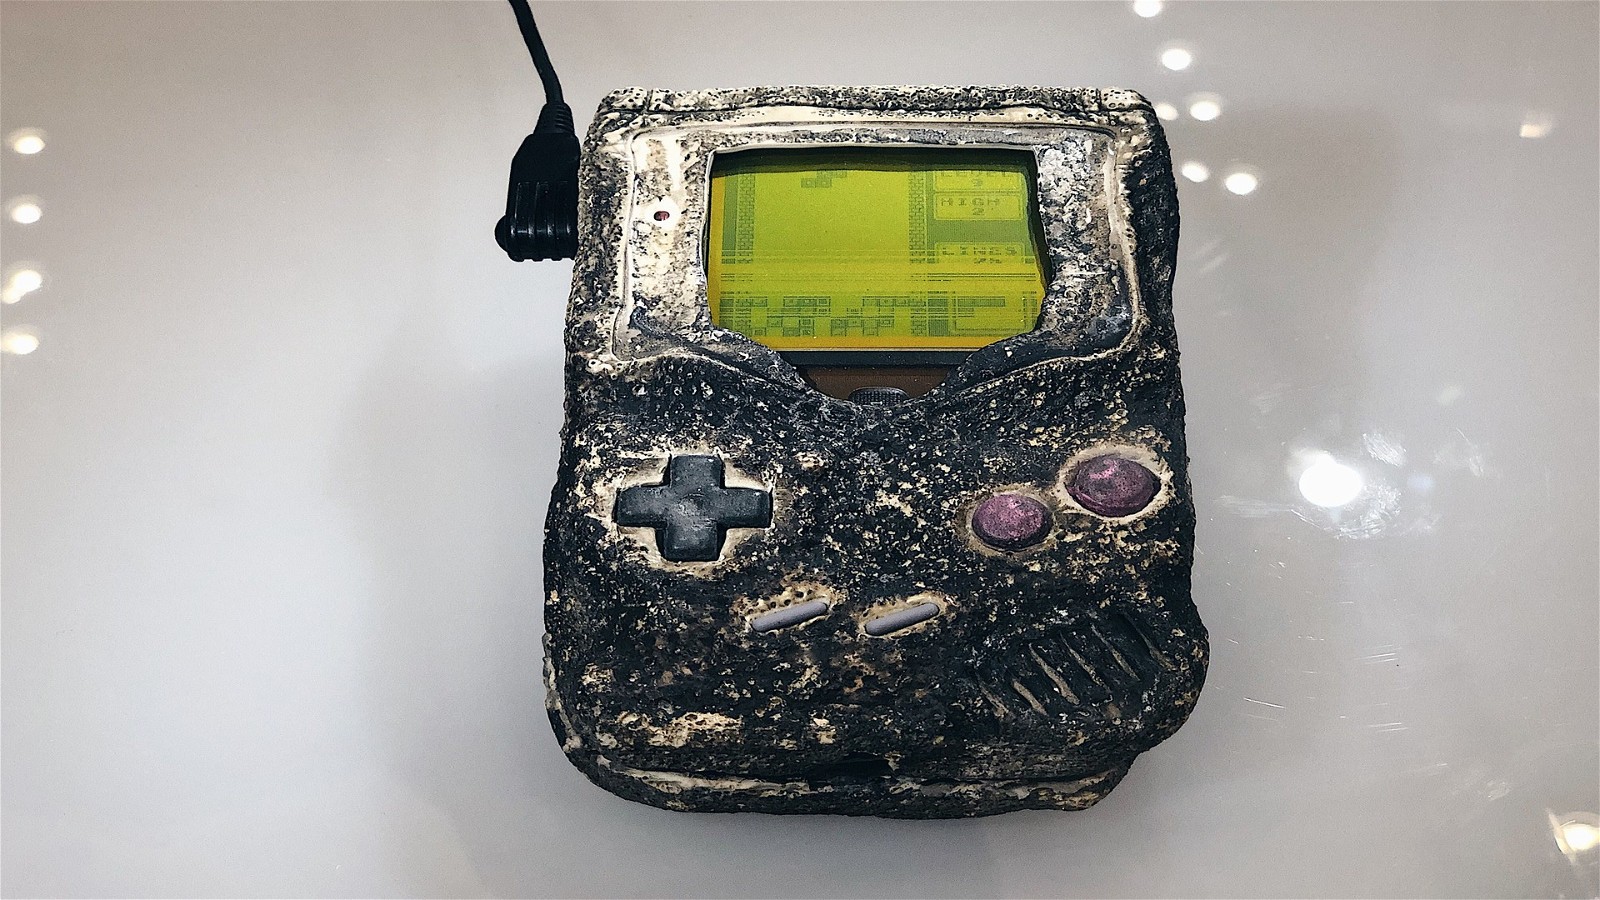 Game Boy That Survived the Gulf War